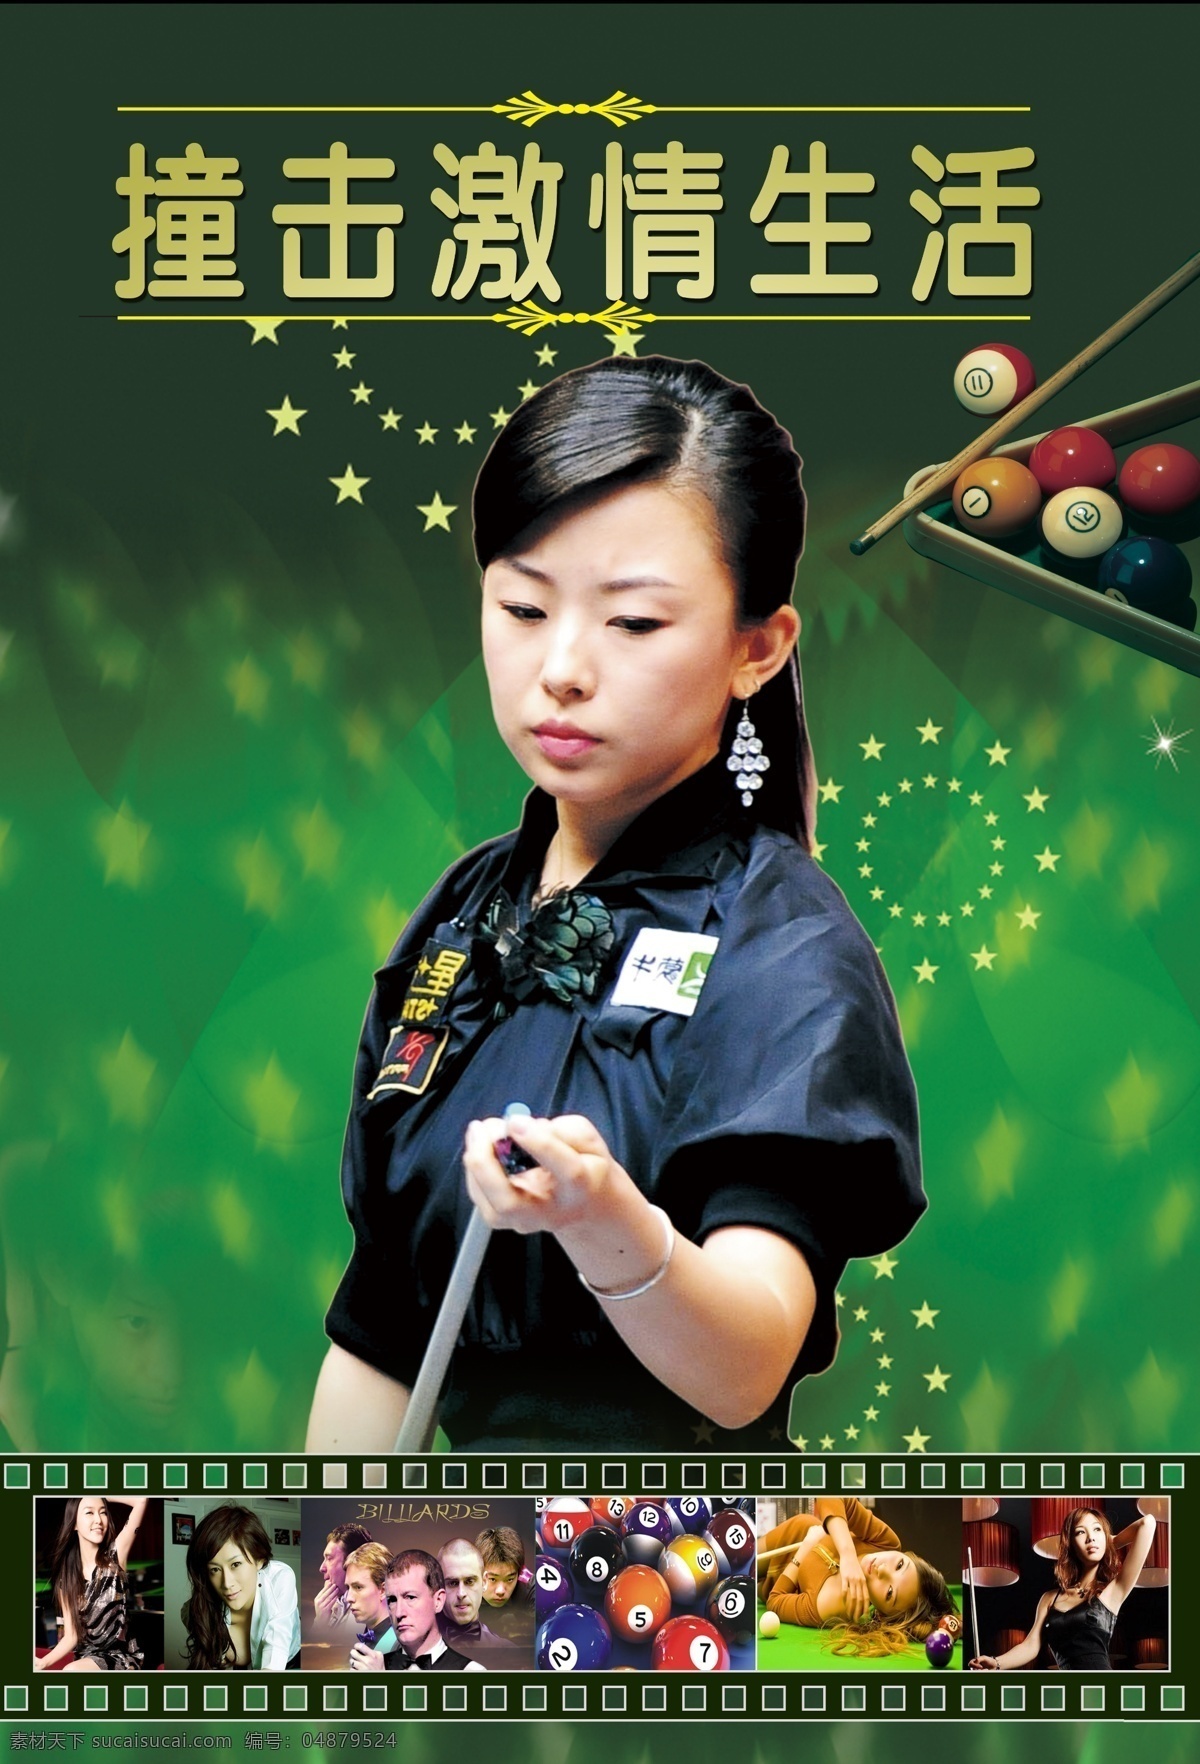 台球 桌球 桌球明星 台球明星 潘晓婷 桌球杆 引领台球时尚 中国台球明星 广告设计模板 源文件